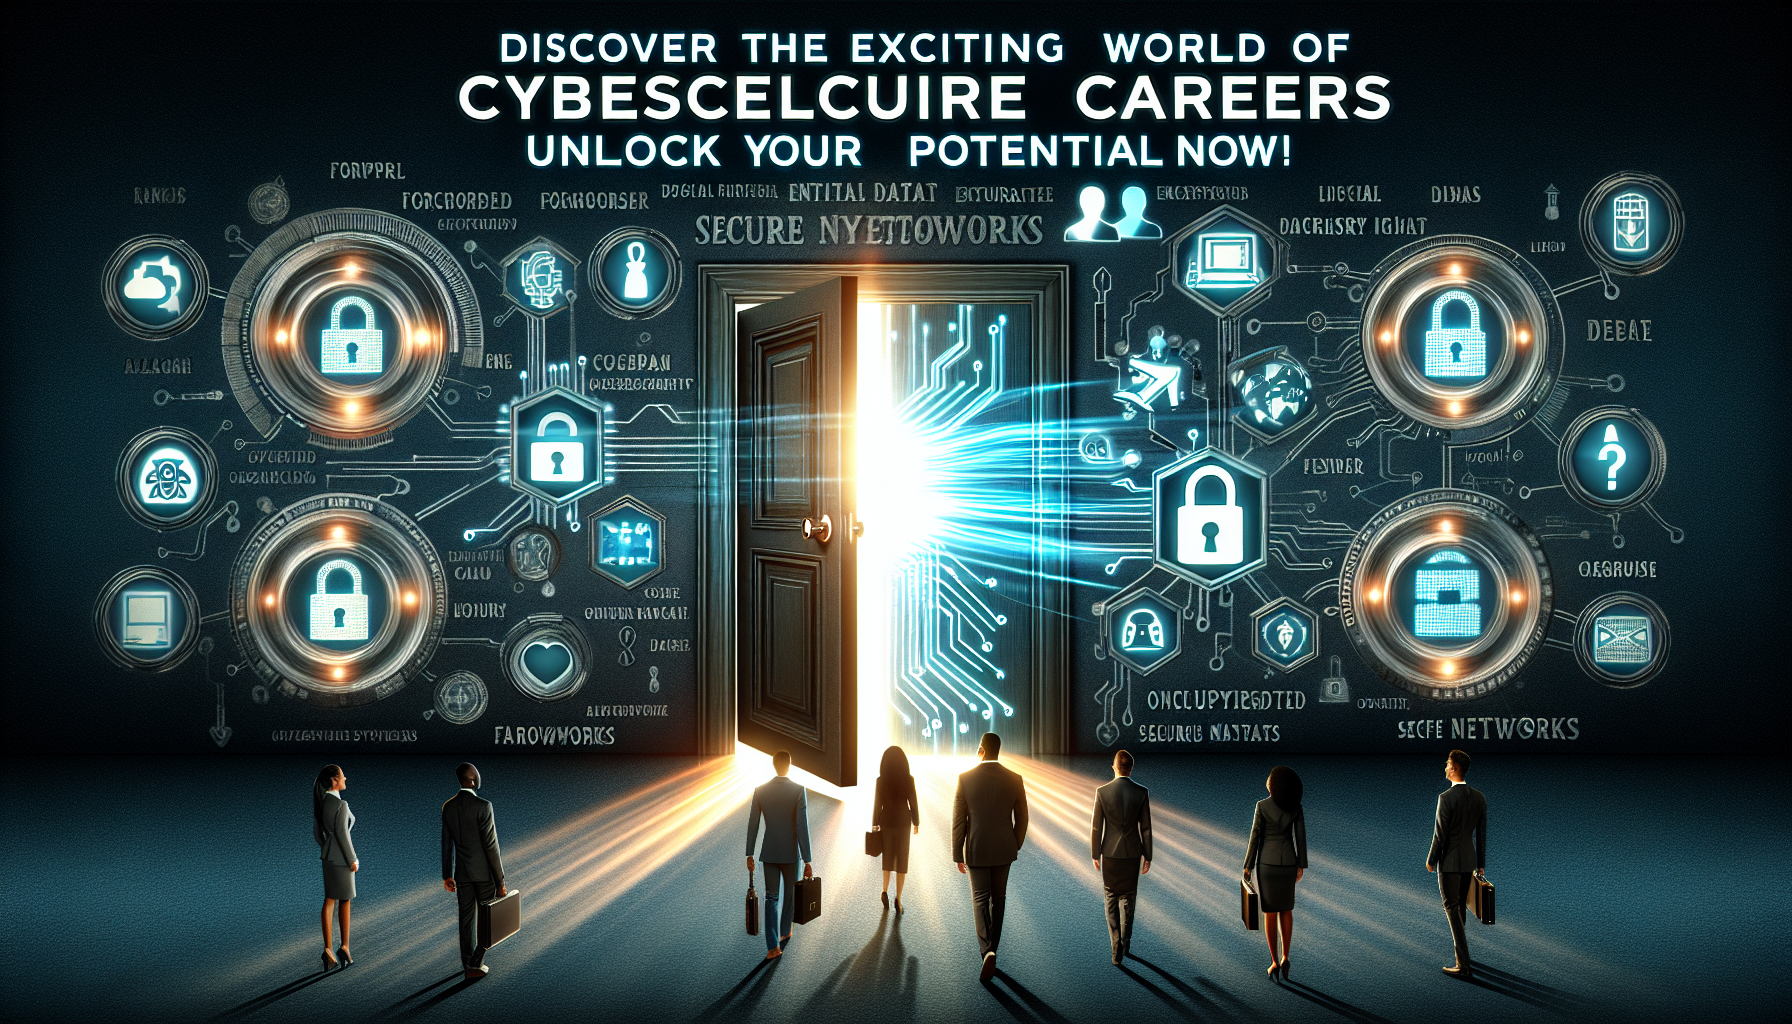 découvrez les opportunités de carrière dans le domaine de la cybersécurité avec notre formation en cybersécurité. préparez-vous à un avenir prometteur dans la sécurité informatique.